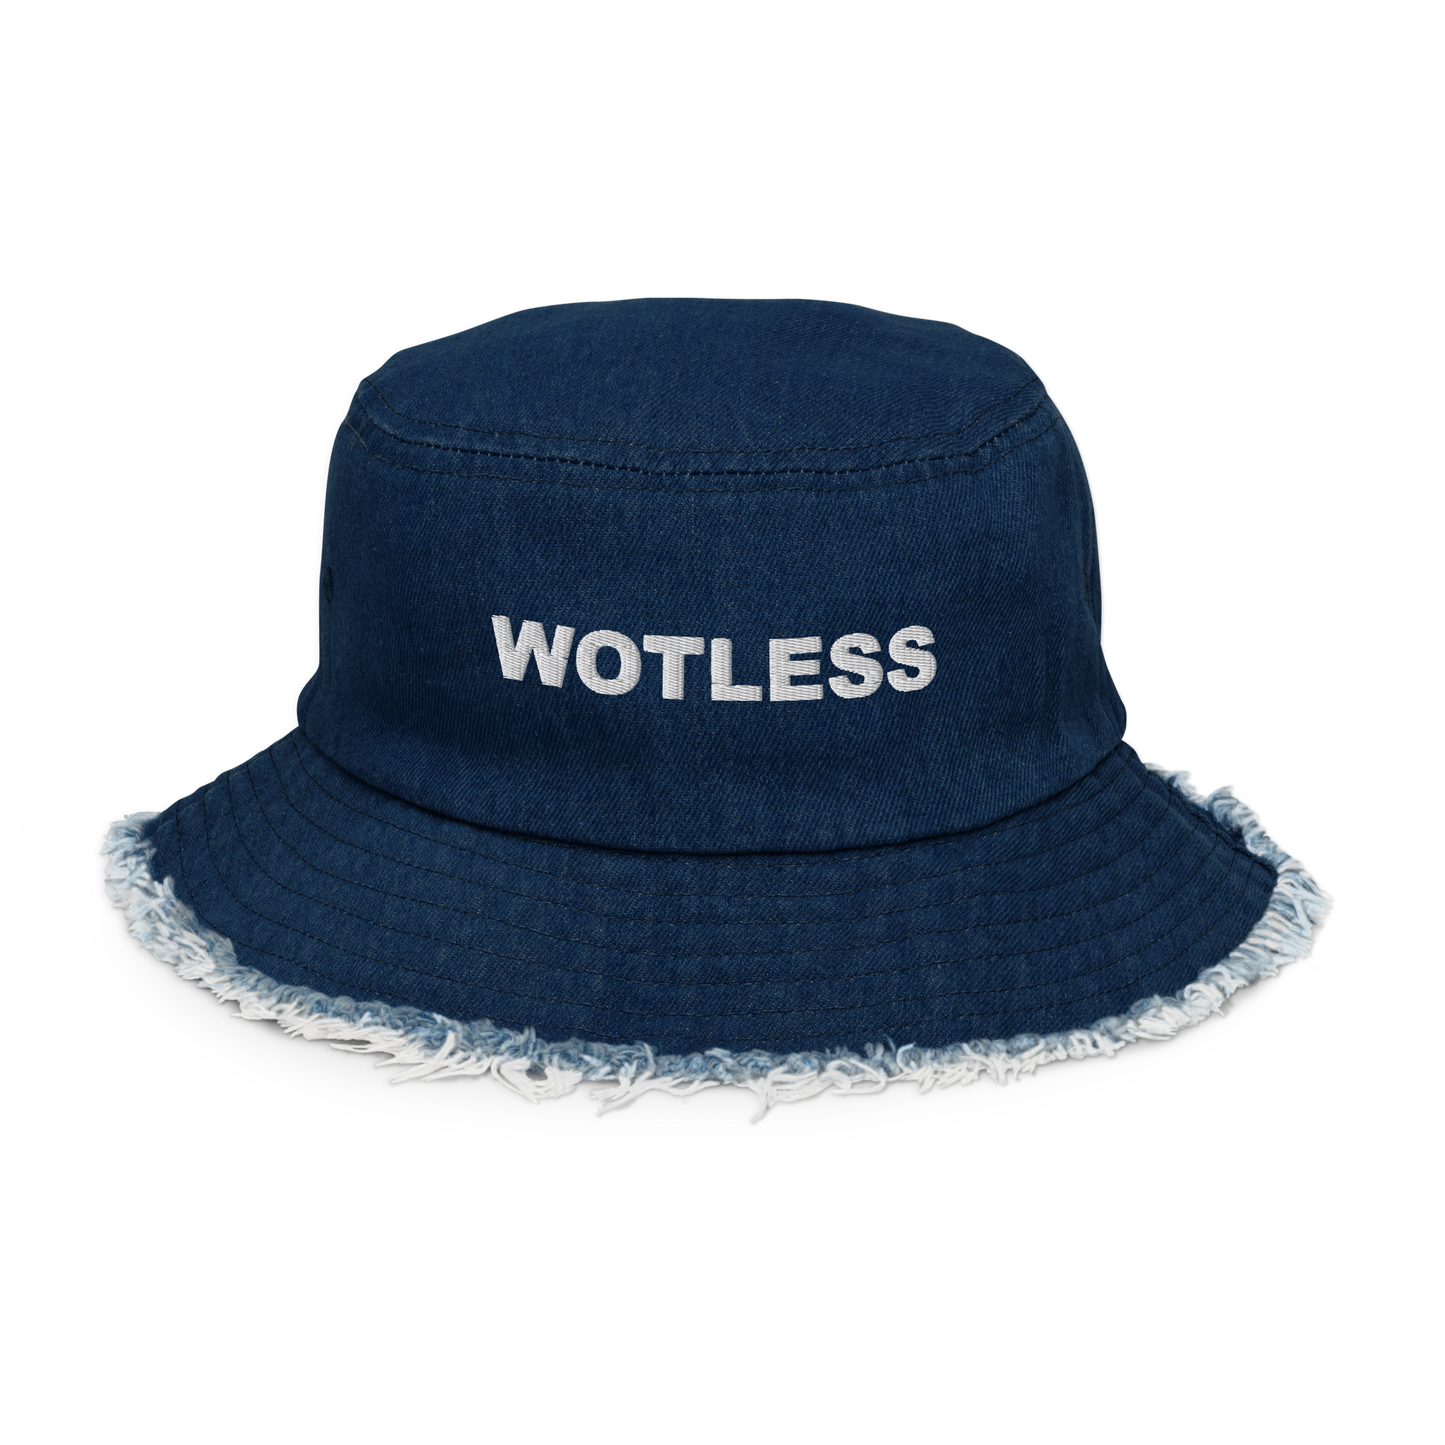 Wotless Distressed denim bucket hat